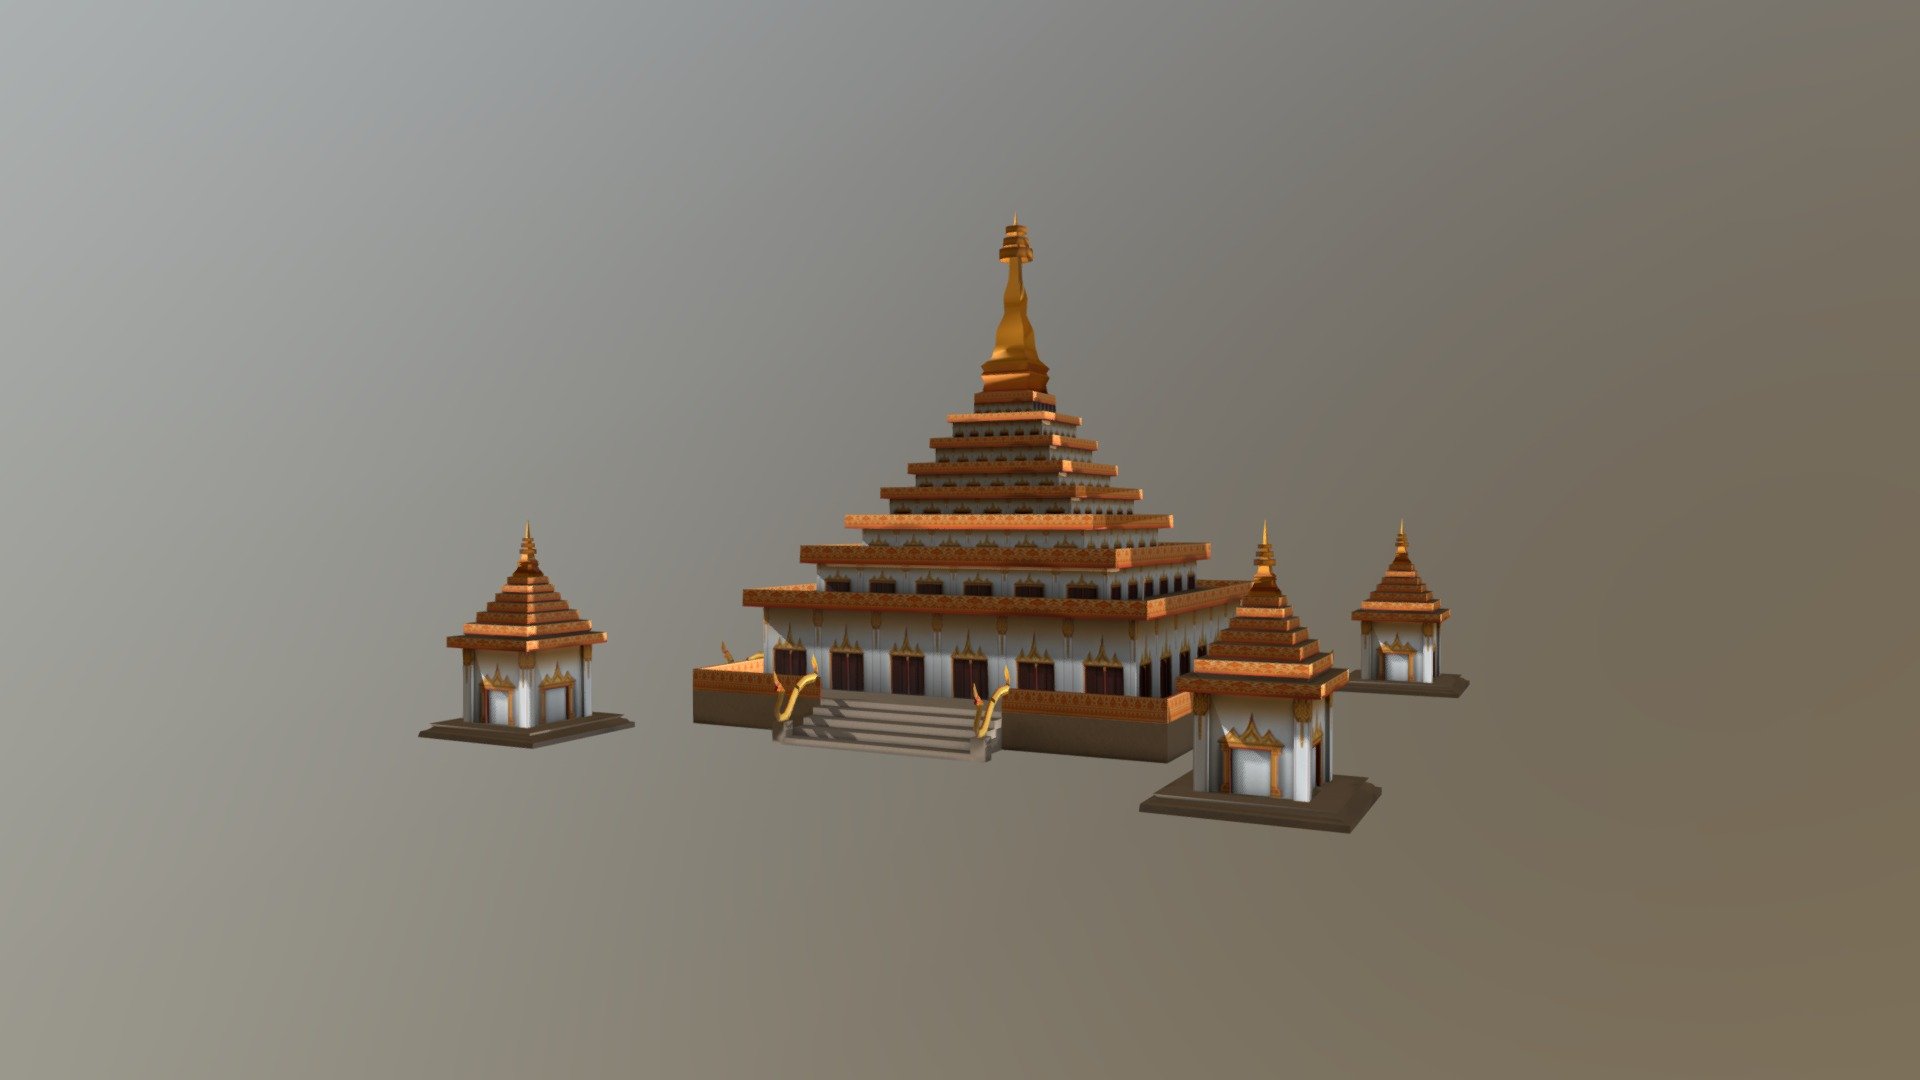 Knongwang Temple At Khon-kaen - Thailand 
Project AR Interactive 
Intern At Cyberrex design co. ltd - Knong-wang Temple - ProjectAR - 3D model by Phutteera.J (@Mukmiez) 3d model